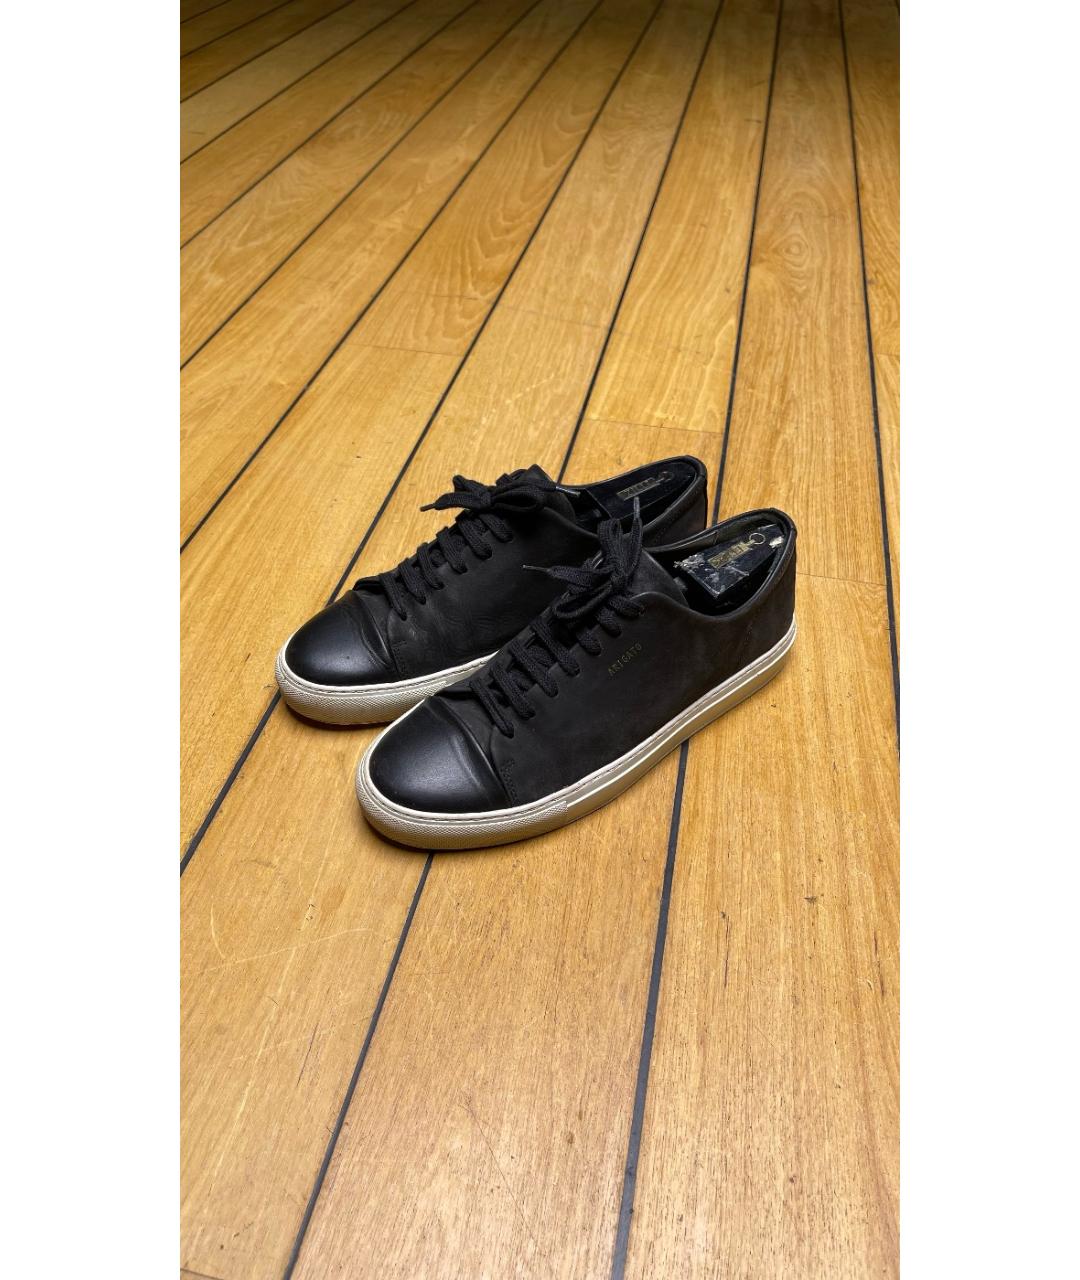 AXEL ARIGATO Черные нубуковые низкие кроссовки / кеды, фото 2